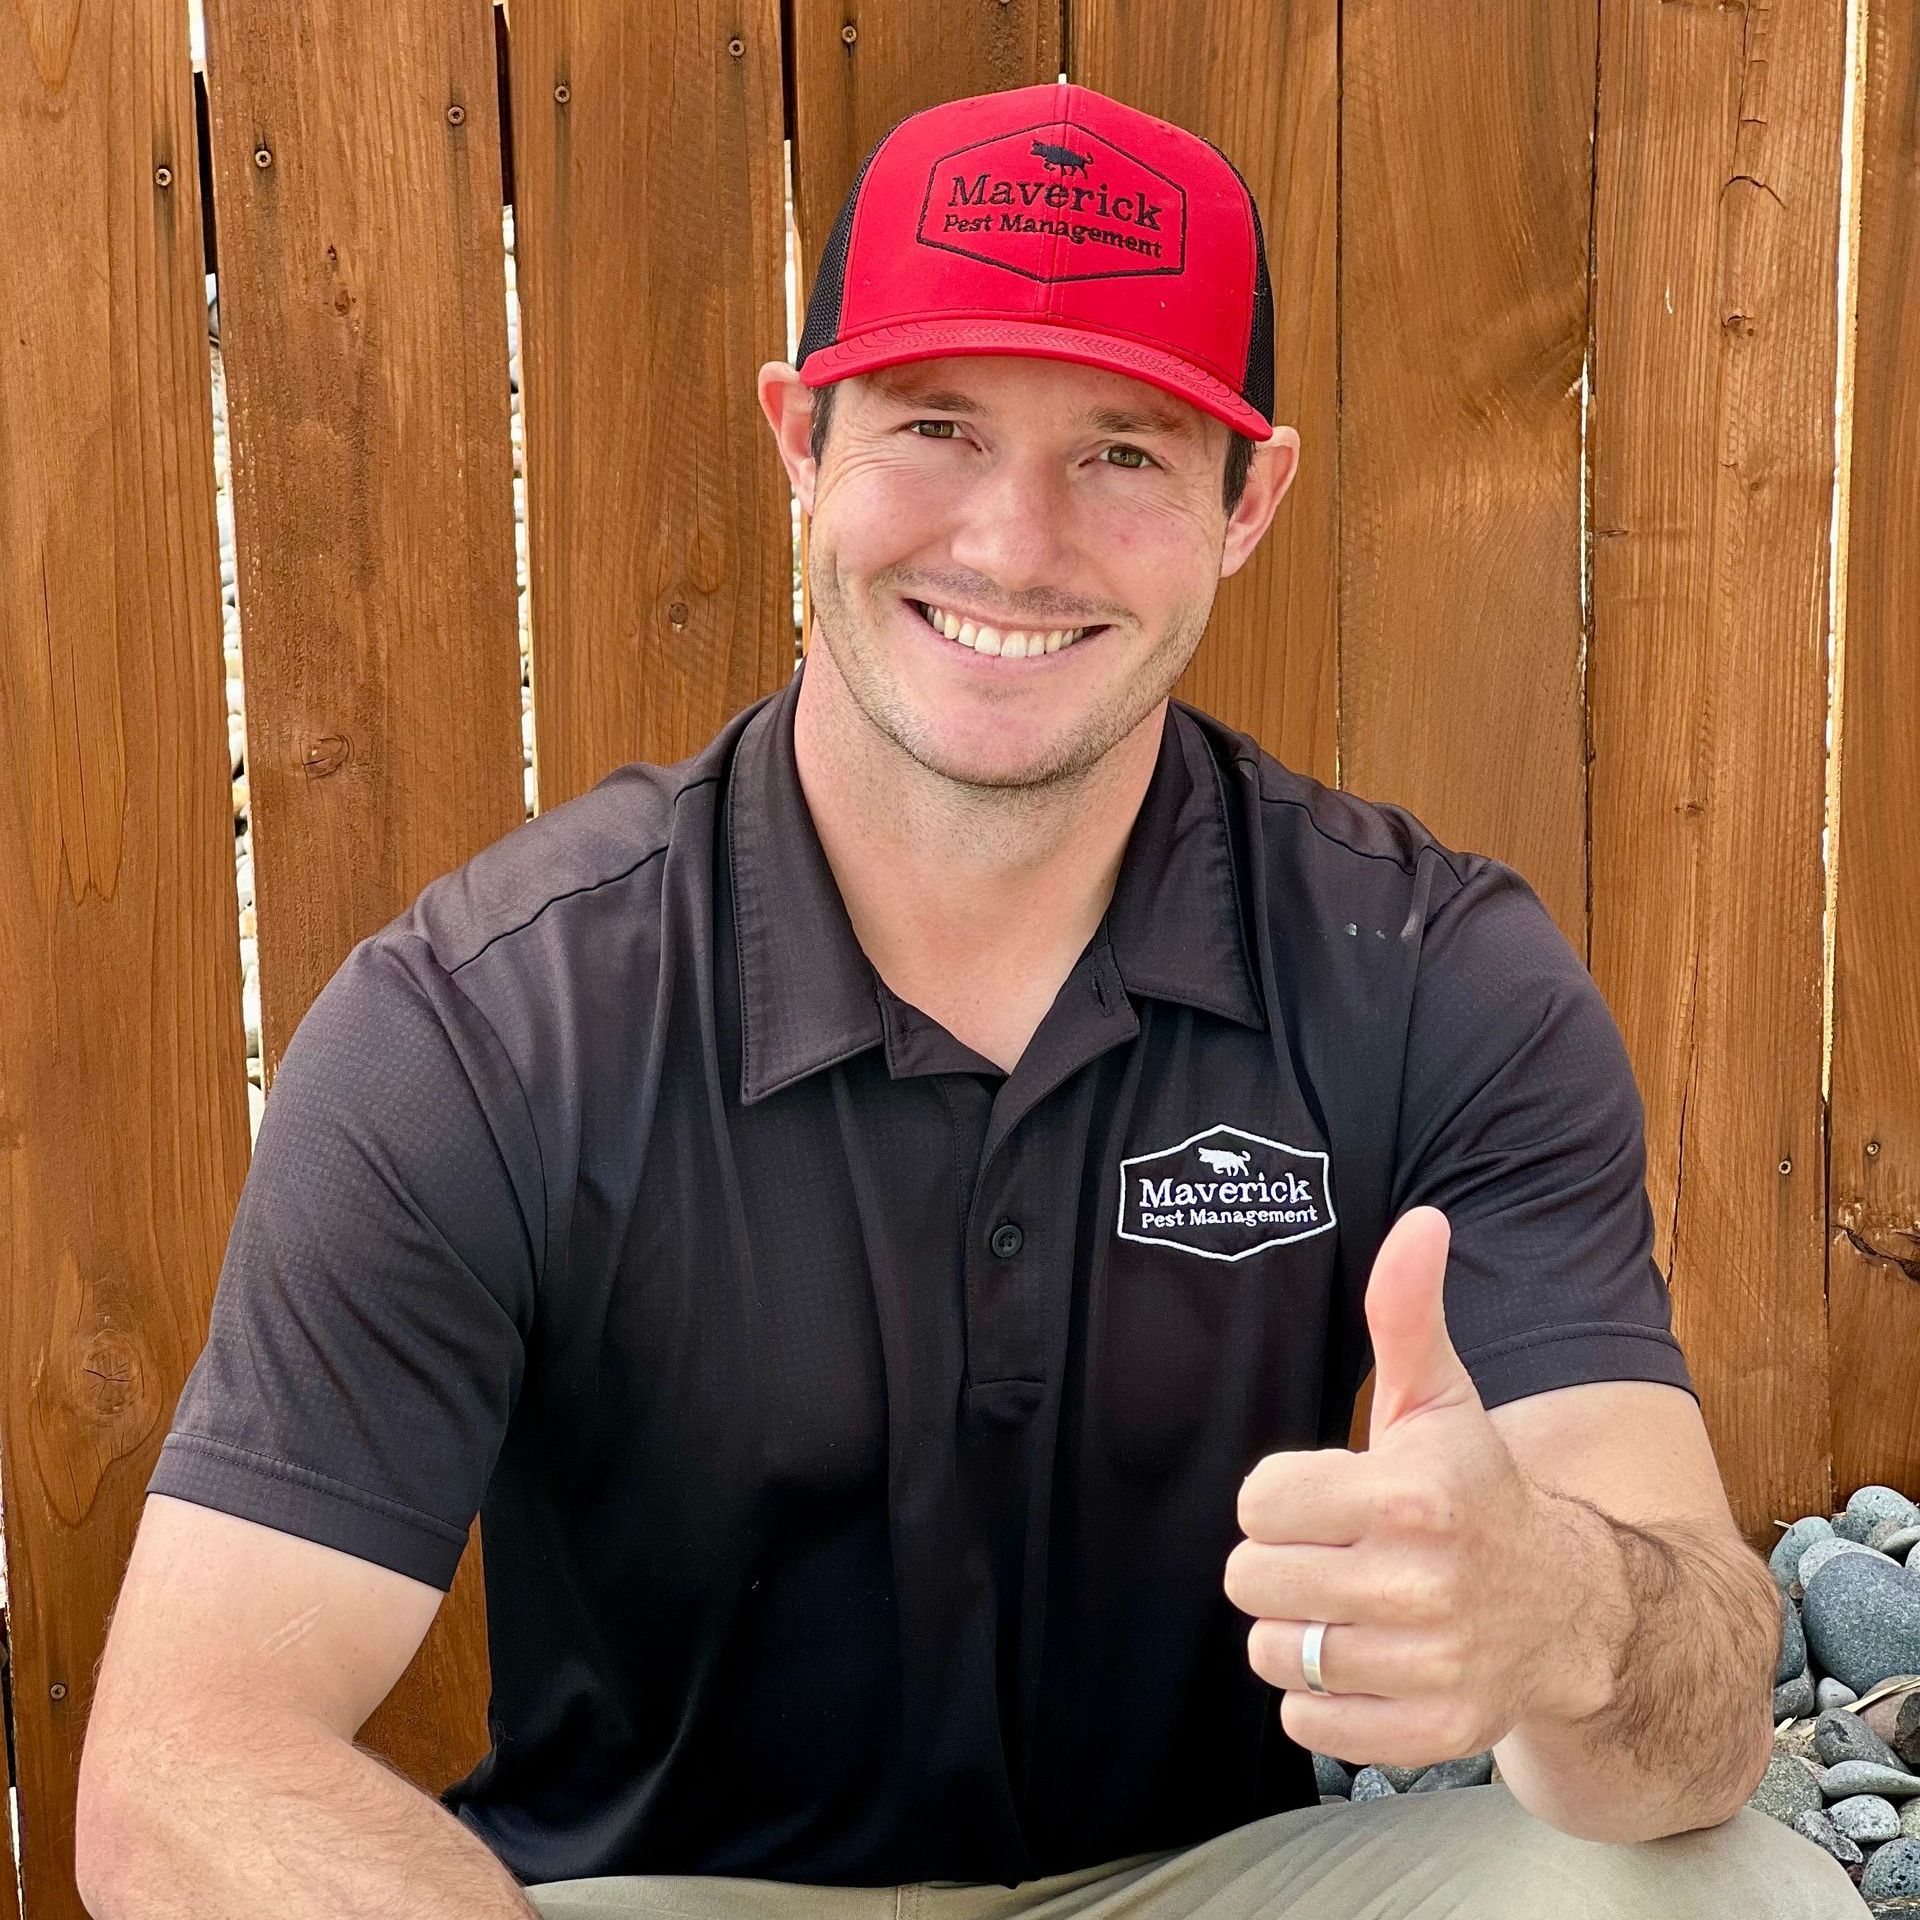 a man wearing a maverick pest management shirt gives a thumbs up